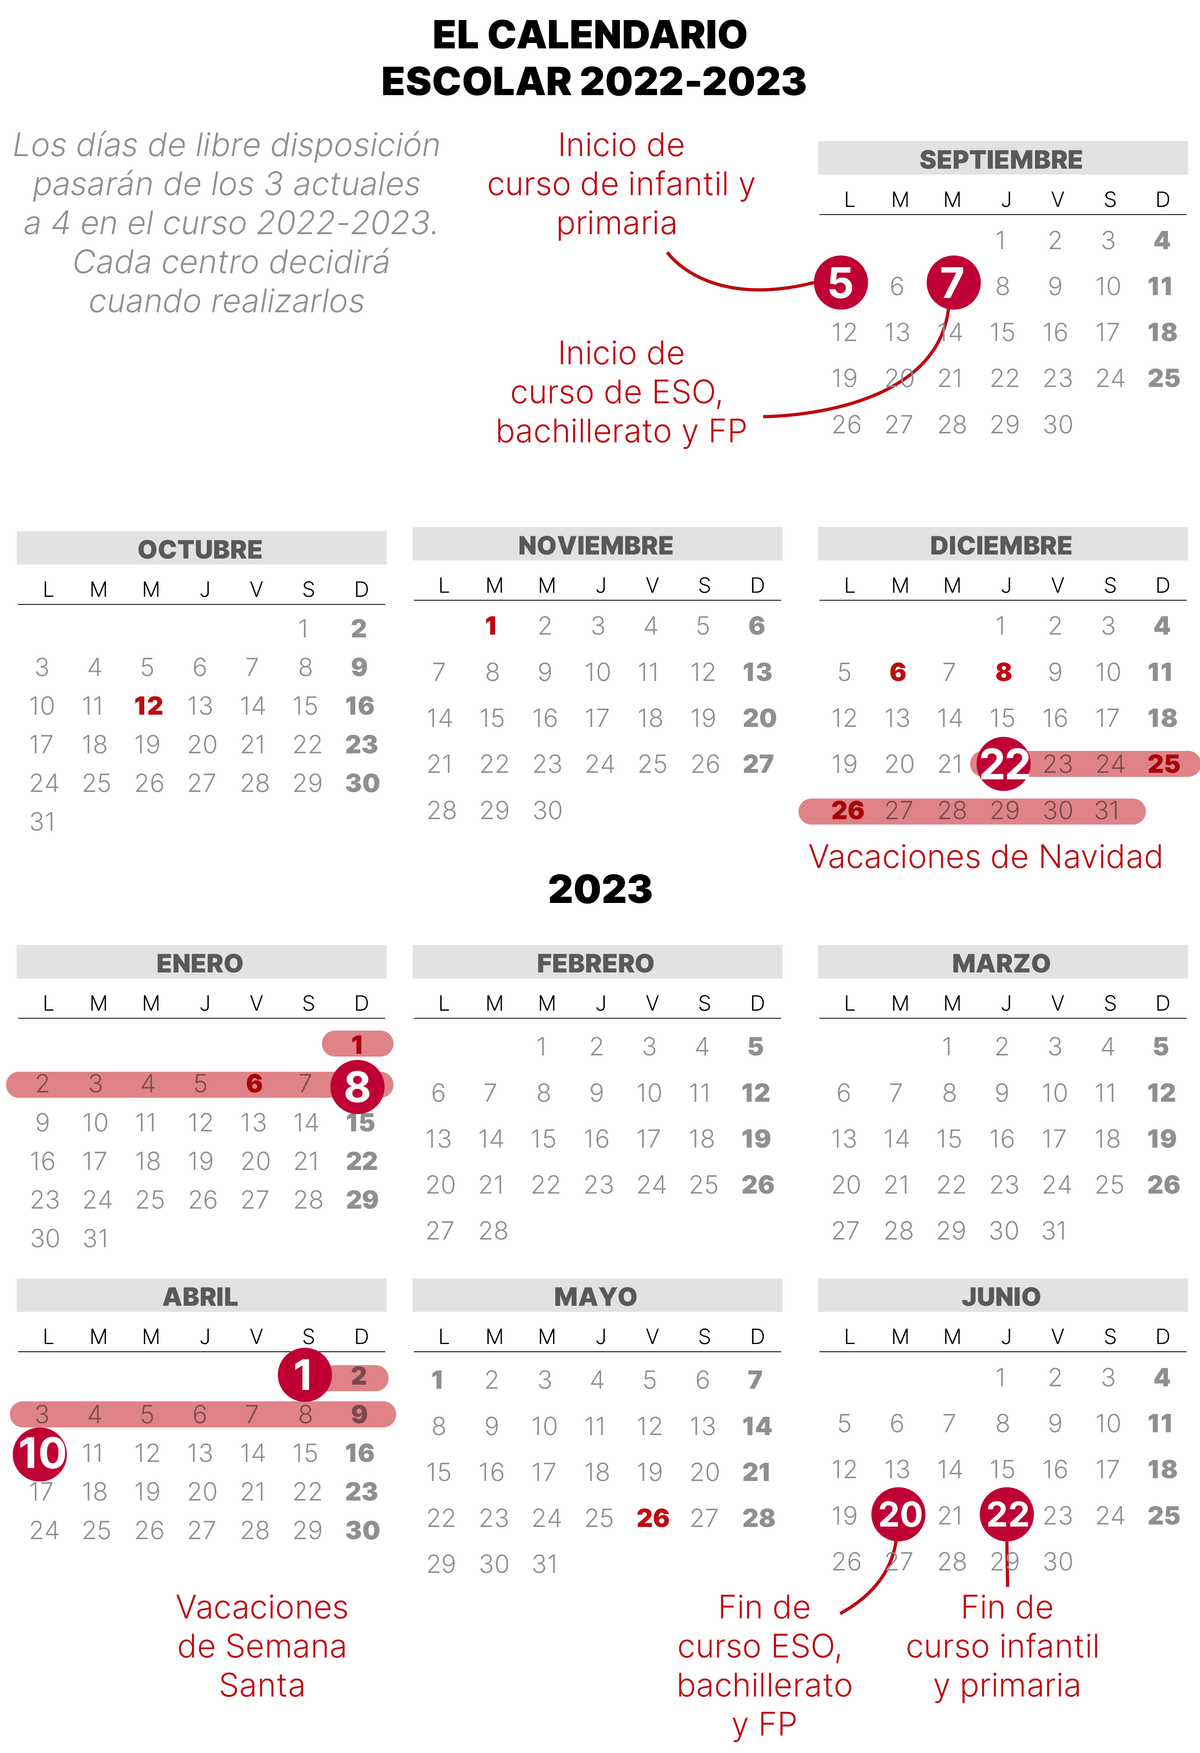 Calendari escolar 2022-2023 a Catalunya: aquestes són les dates clau del curs